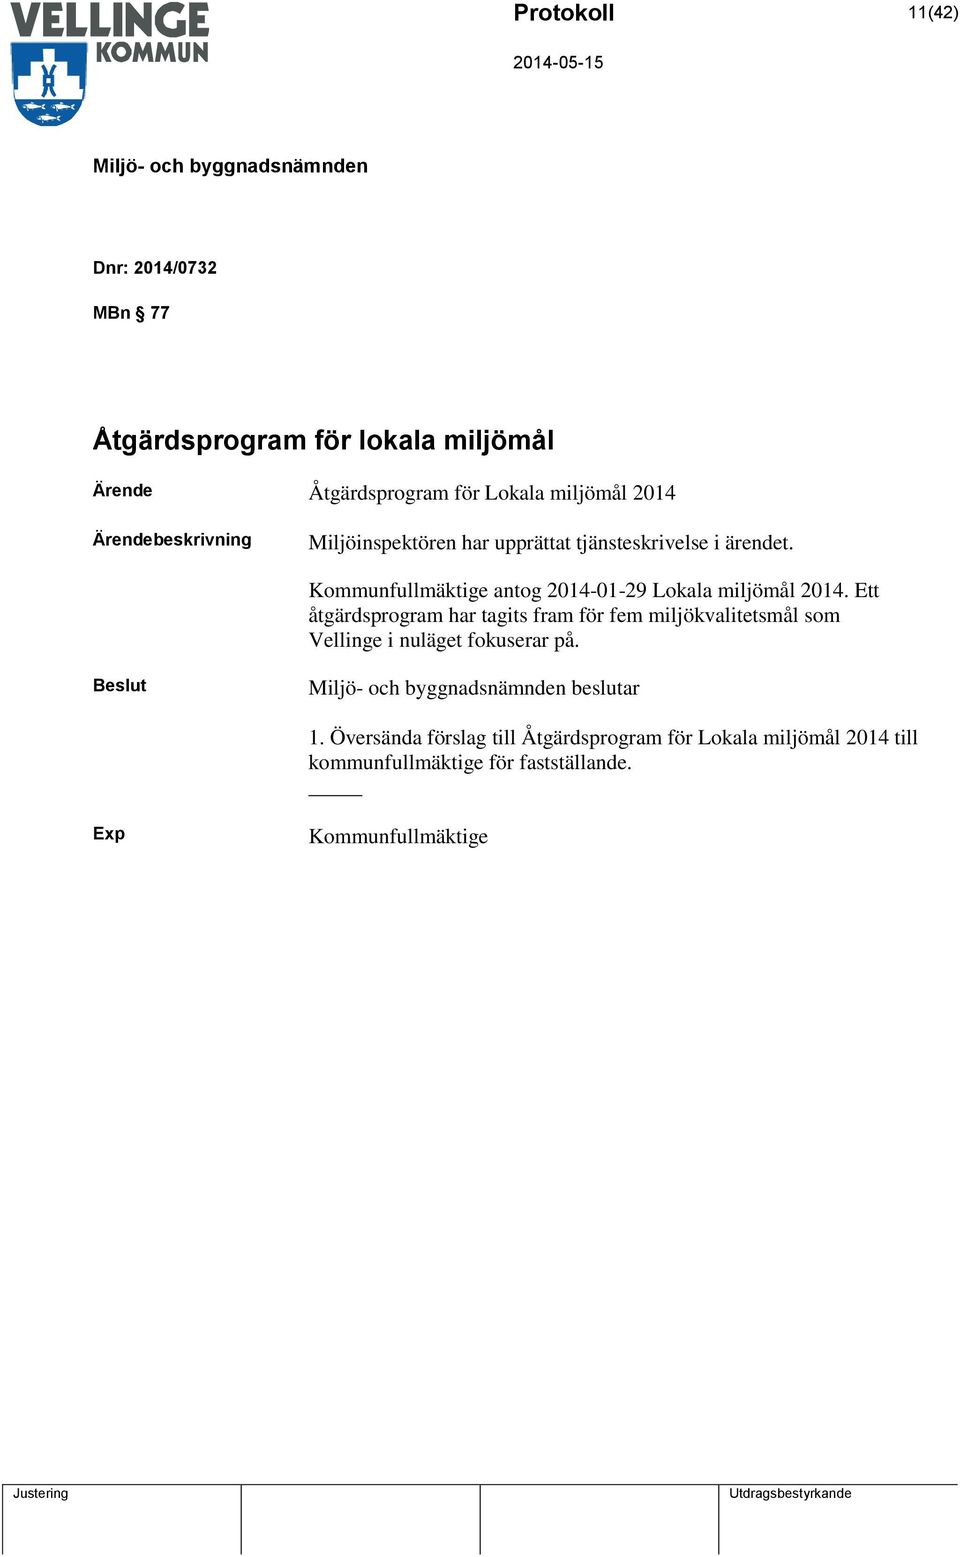 Kommunfullmäktige antog 2014-01-29 Lokala miljömål 2014.